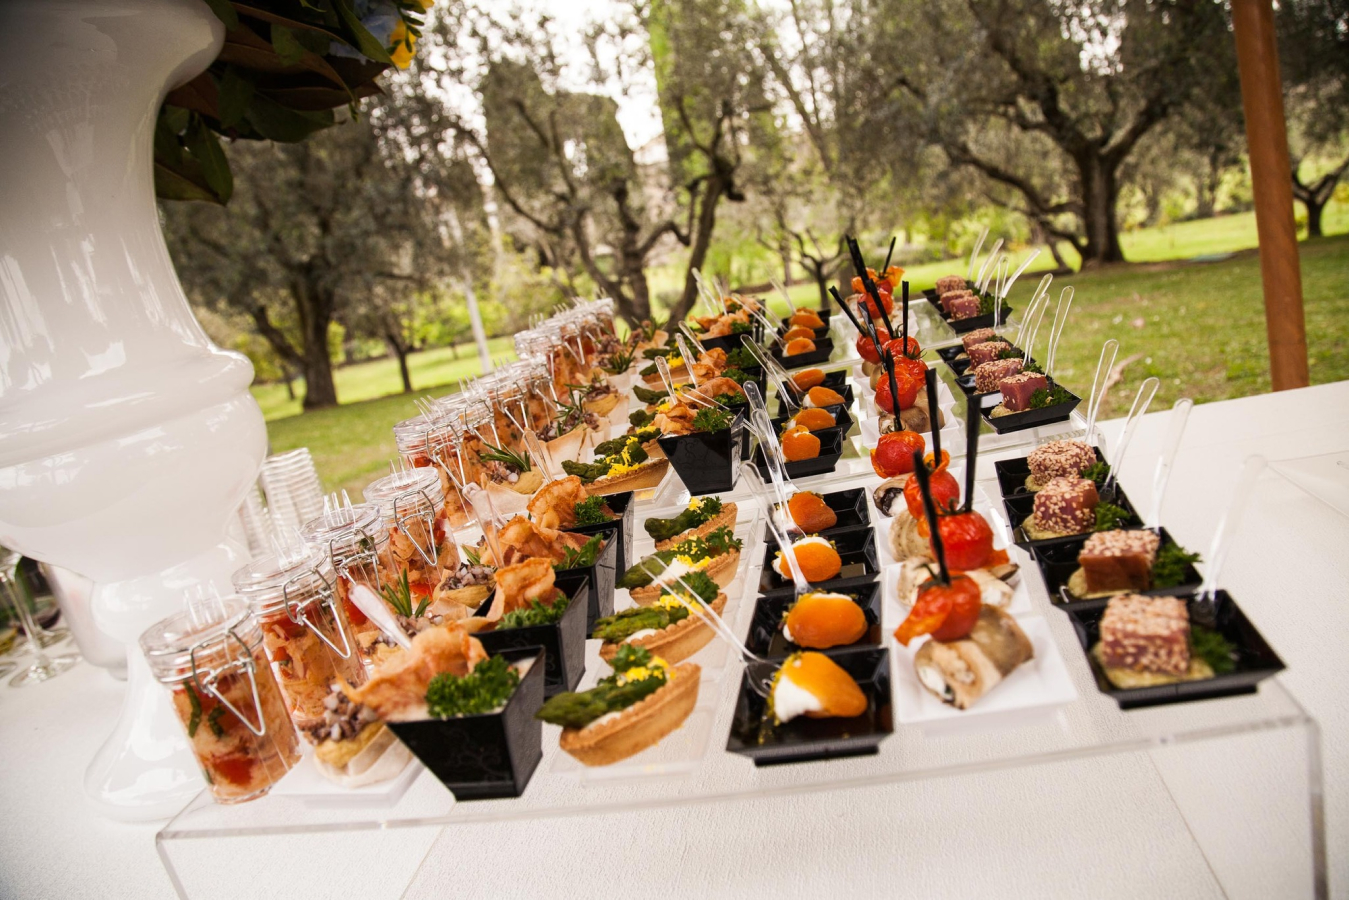 Catering e Banqueting - Servizio offerto da Il Pozzo since 1973